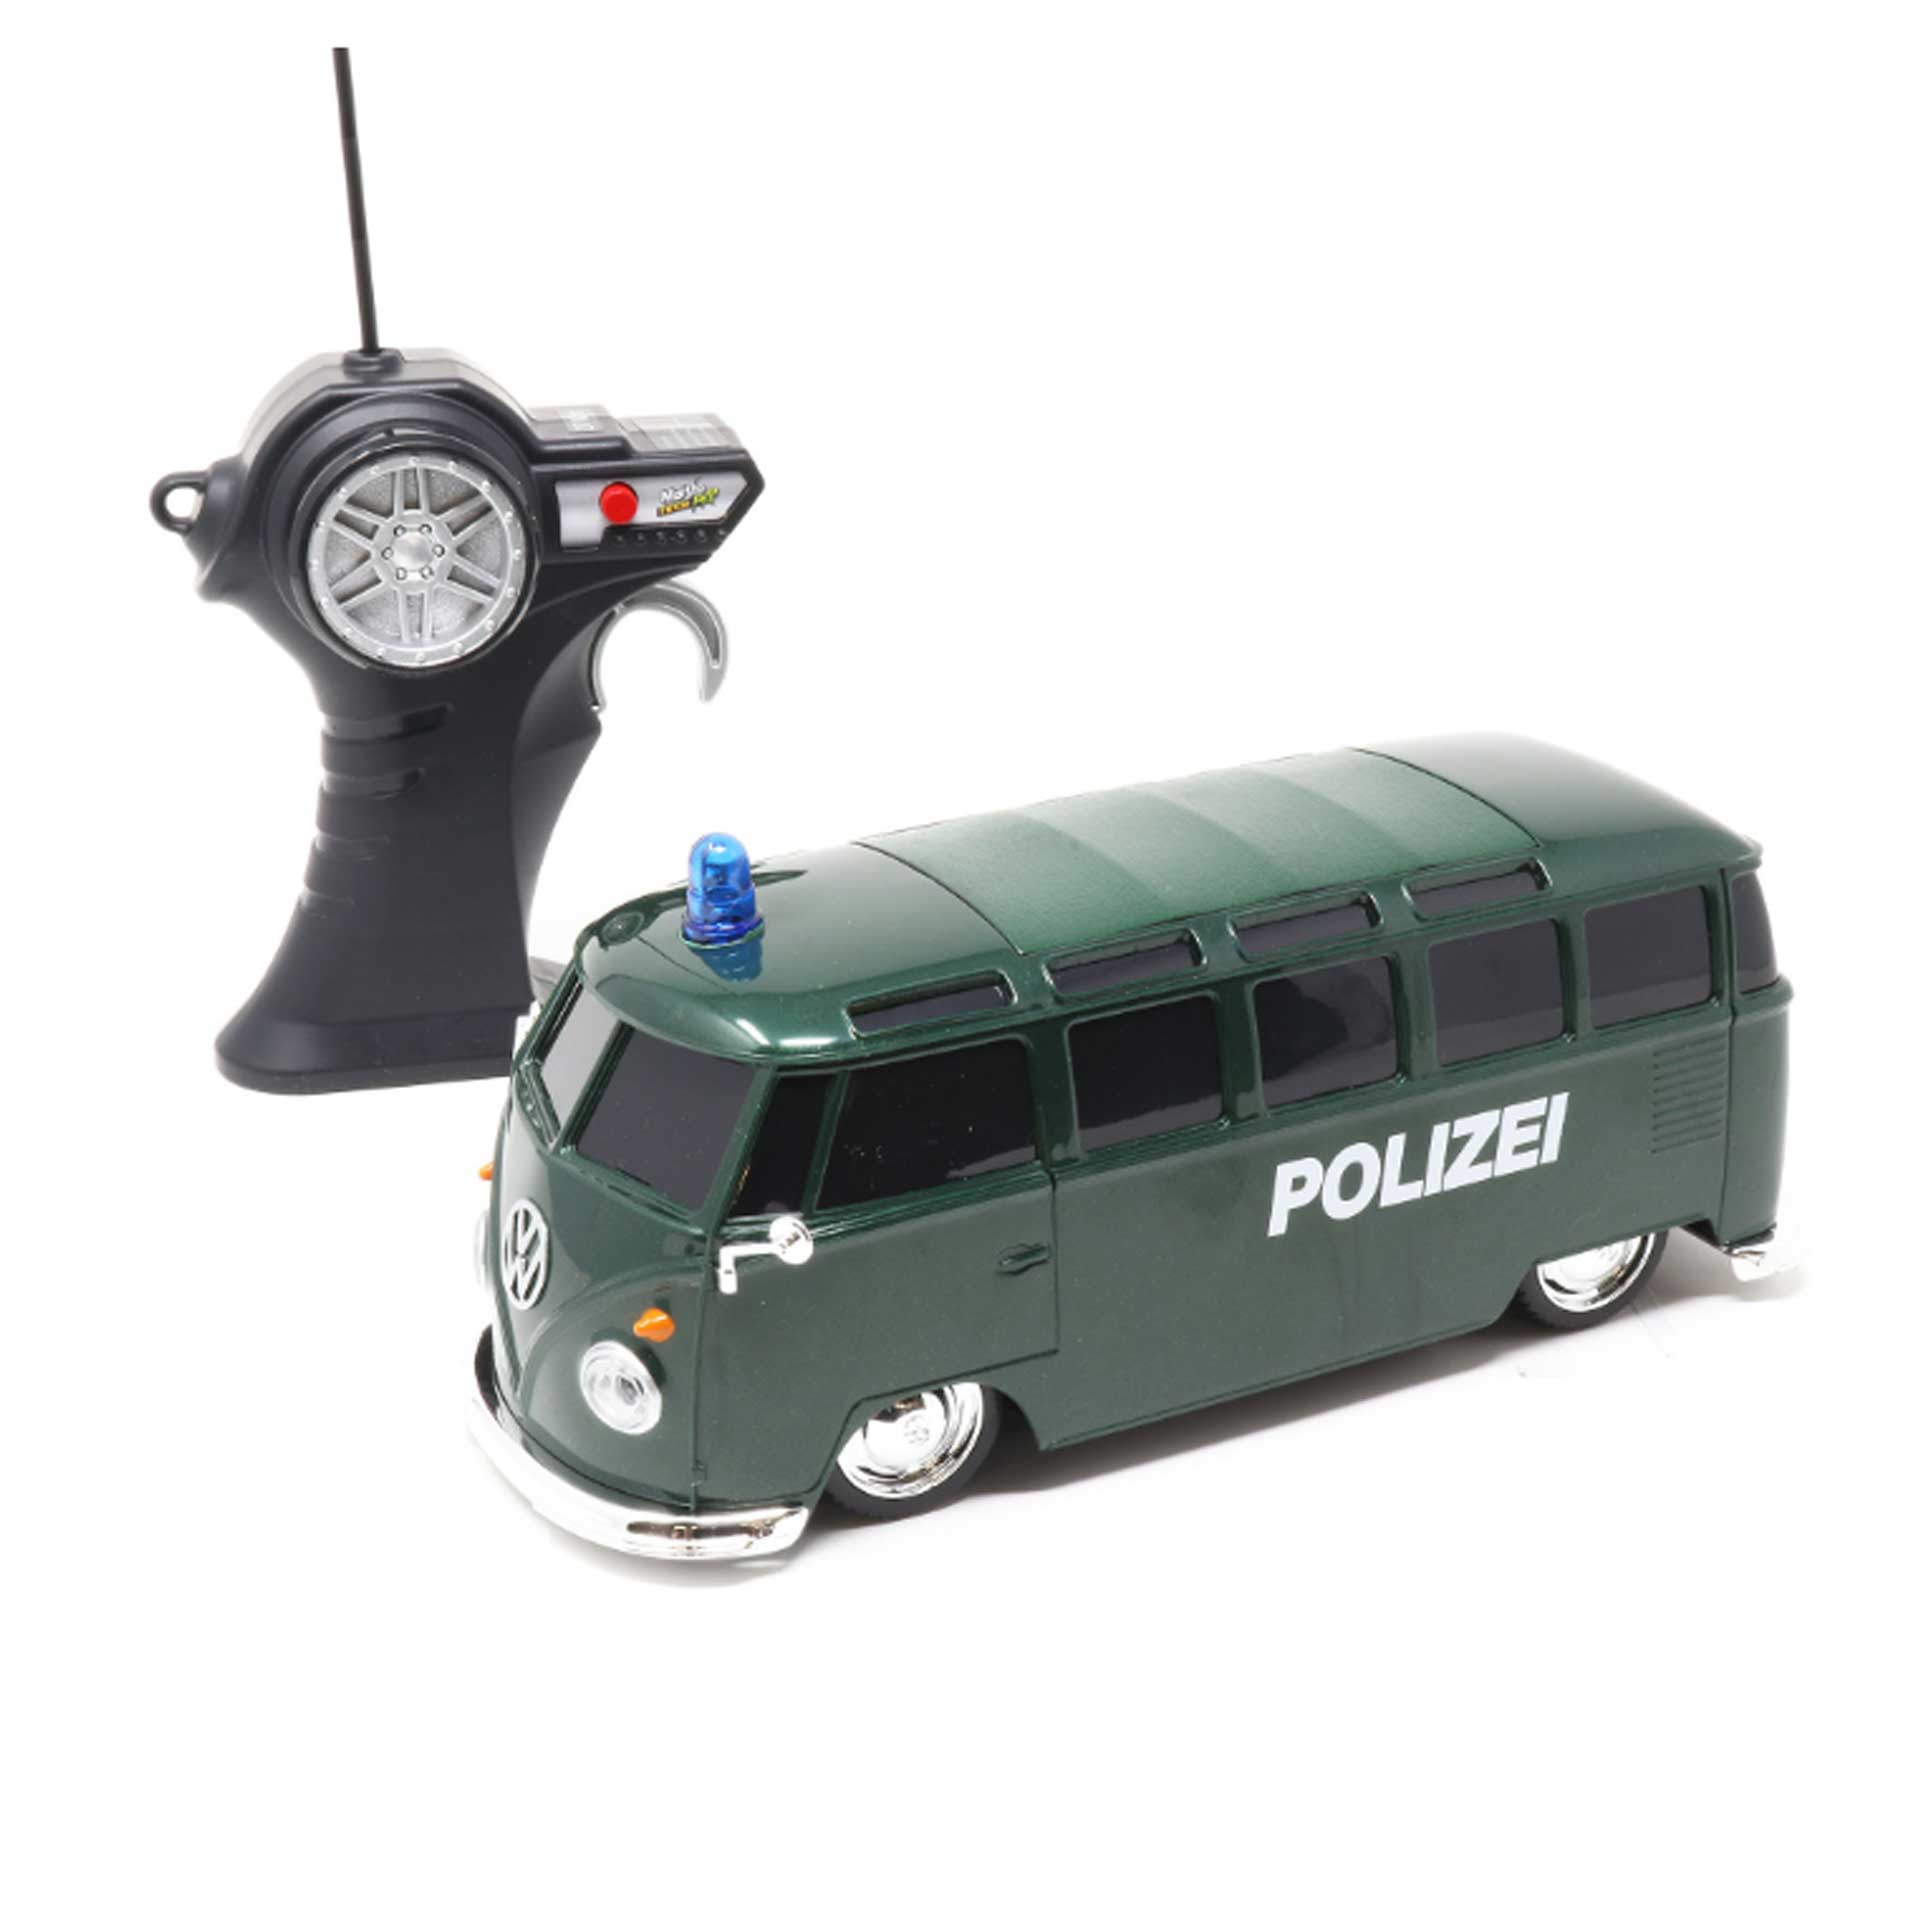 neu tolles R/C Auto: VW Bus Bulli mit Licht 19 cm blau Funk-Fernsteuerung 